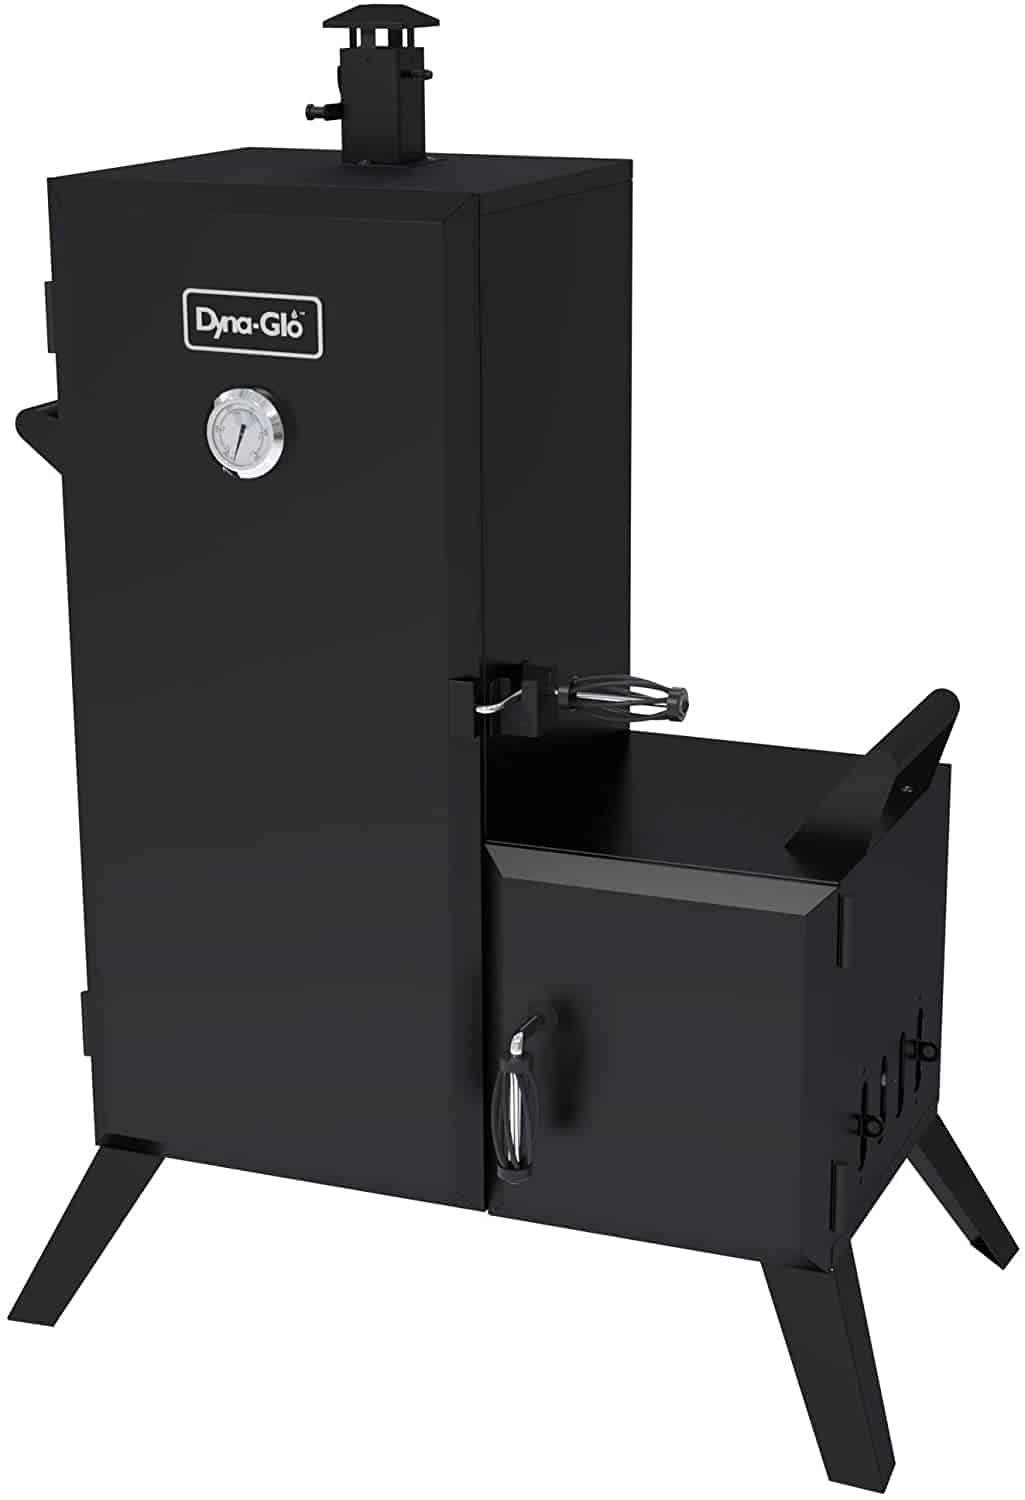 Best vertical & best offset smoker overall- Dyna-Glo Vertical Offset Charcoal Smoker